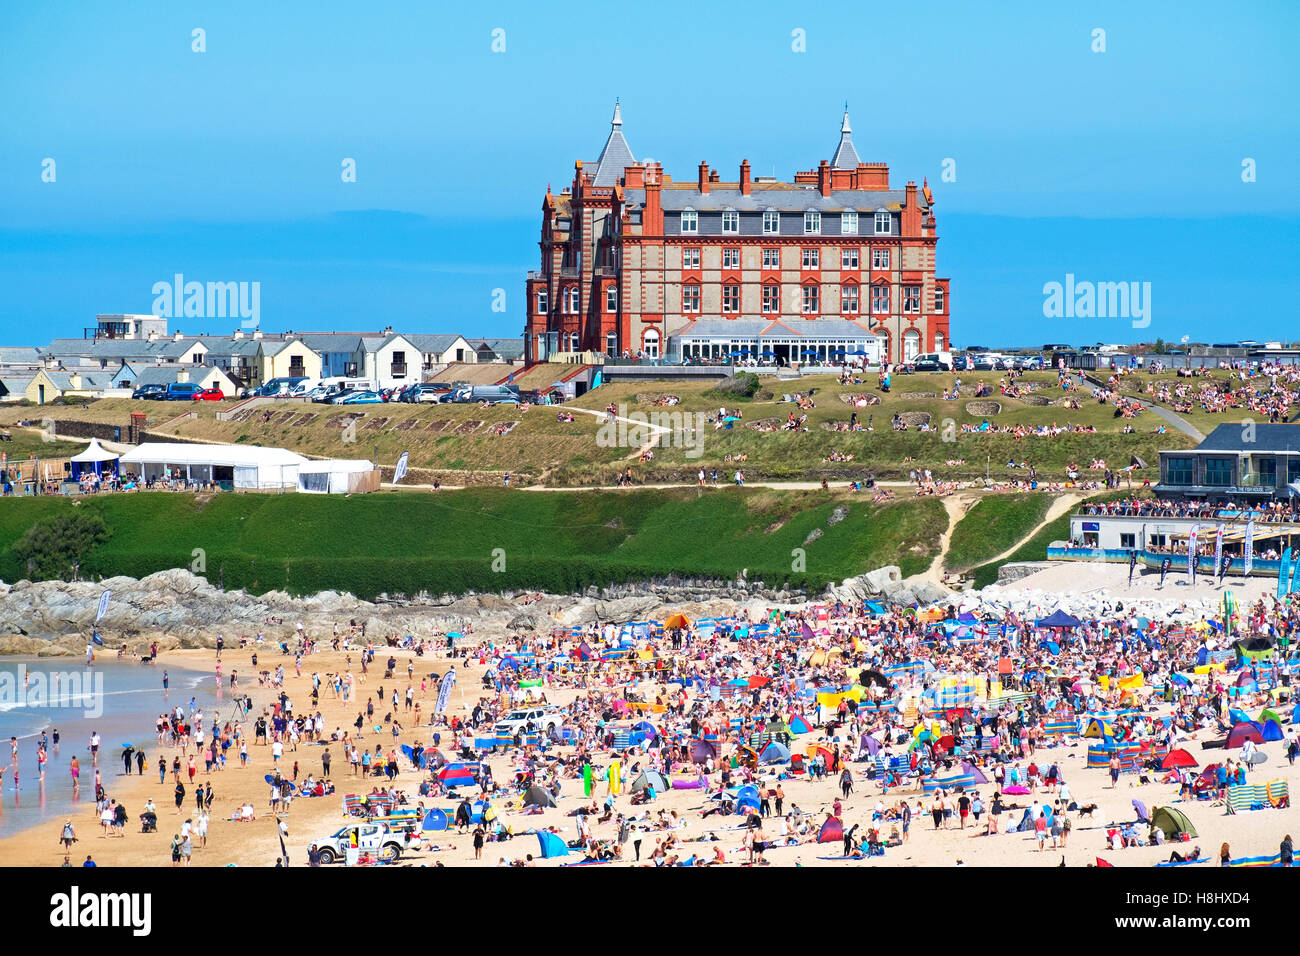 La pointe hôtel surplombant la plage de Fistral, Newquay, Cornwall, England, UK Banque D'Images